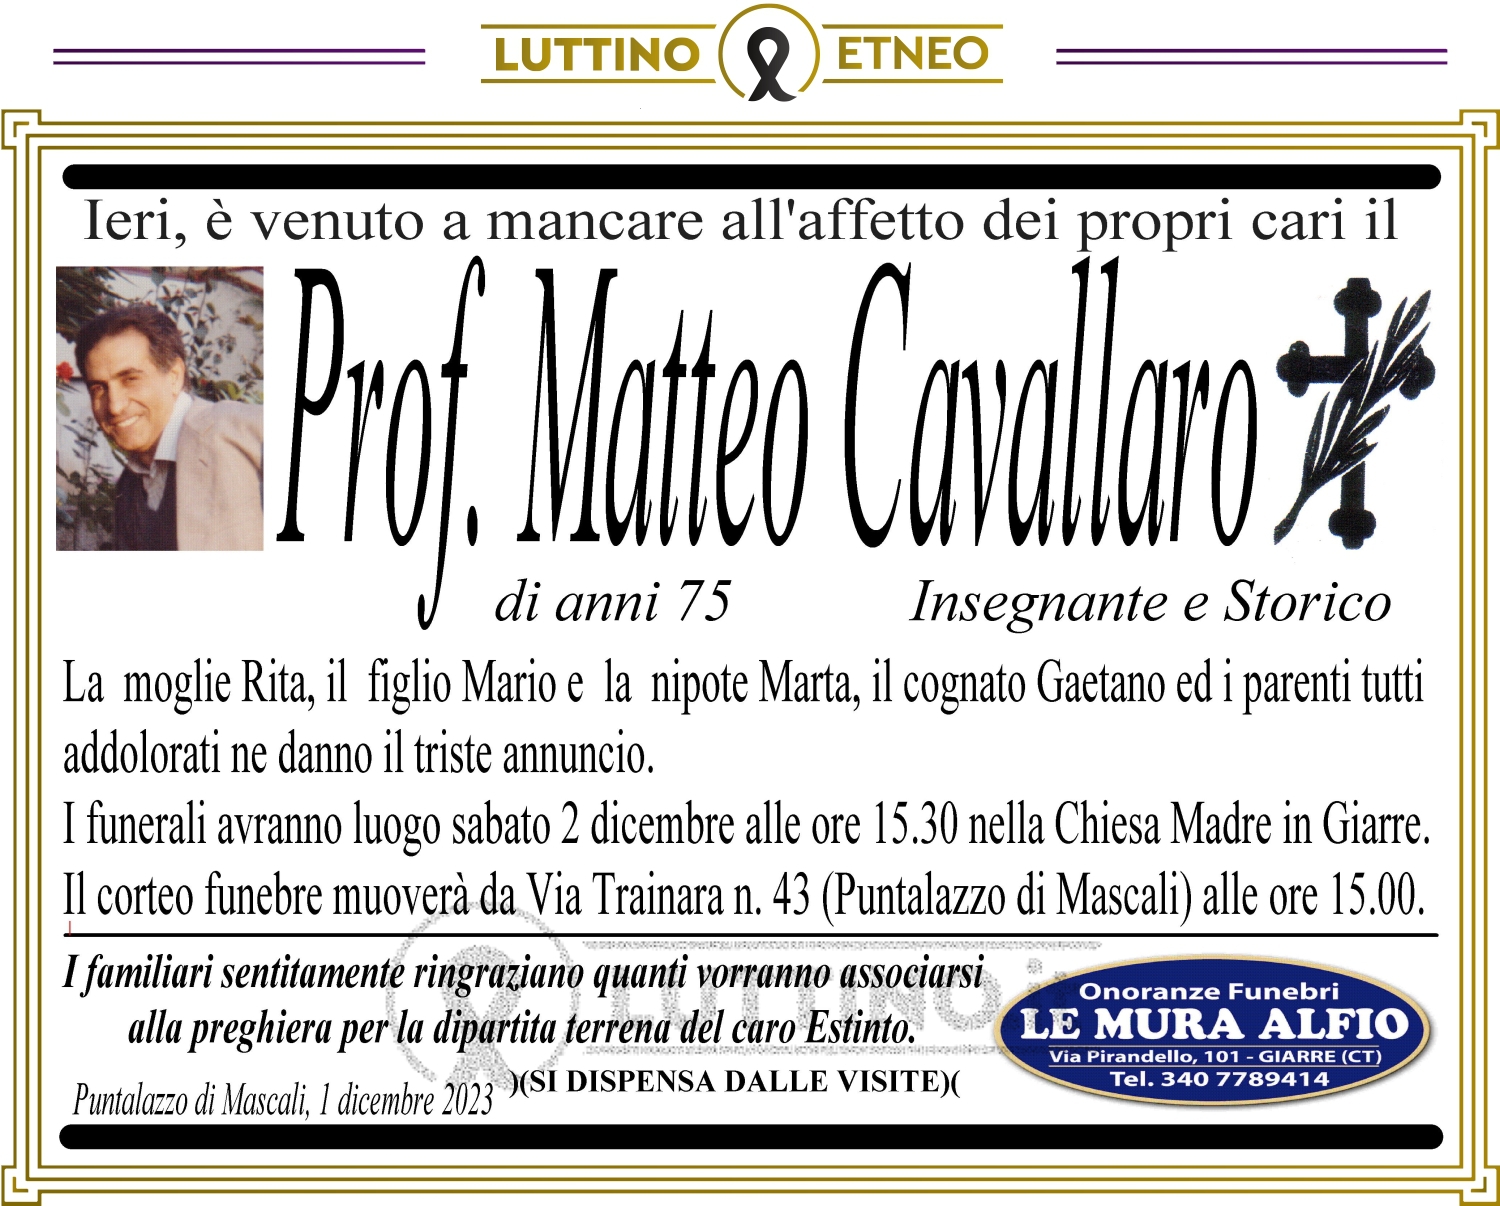 Matteo Cavallaro